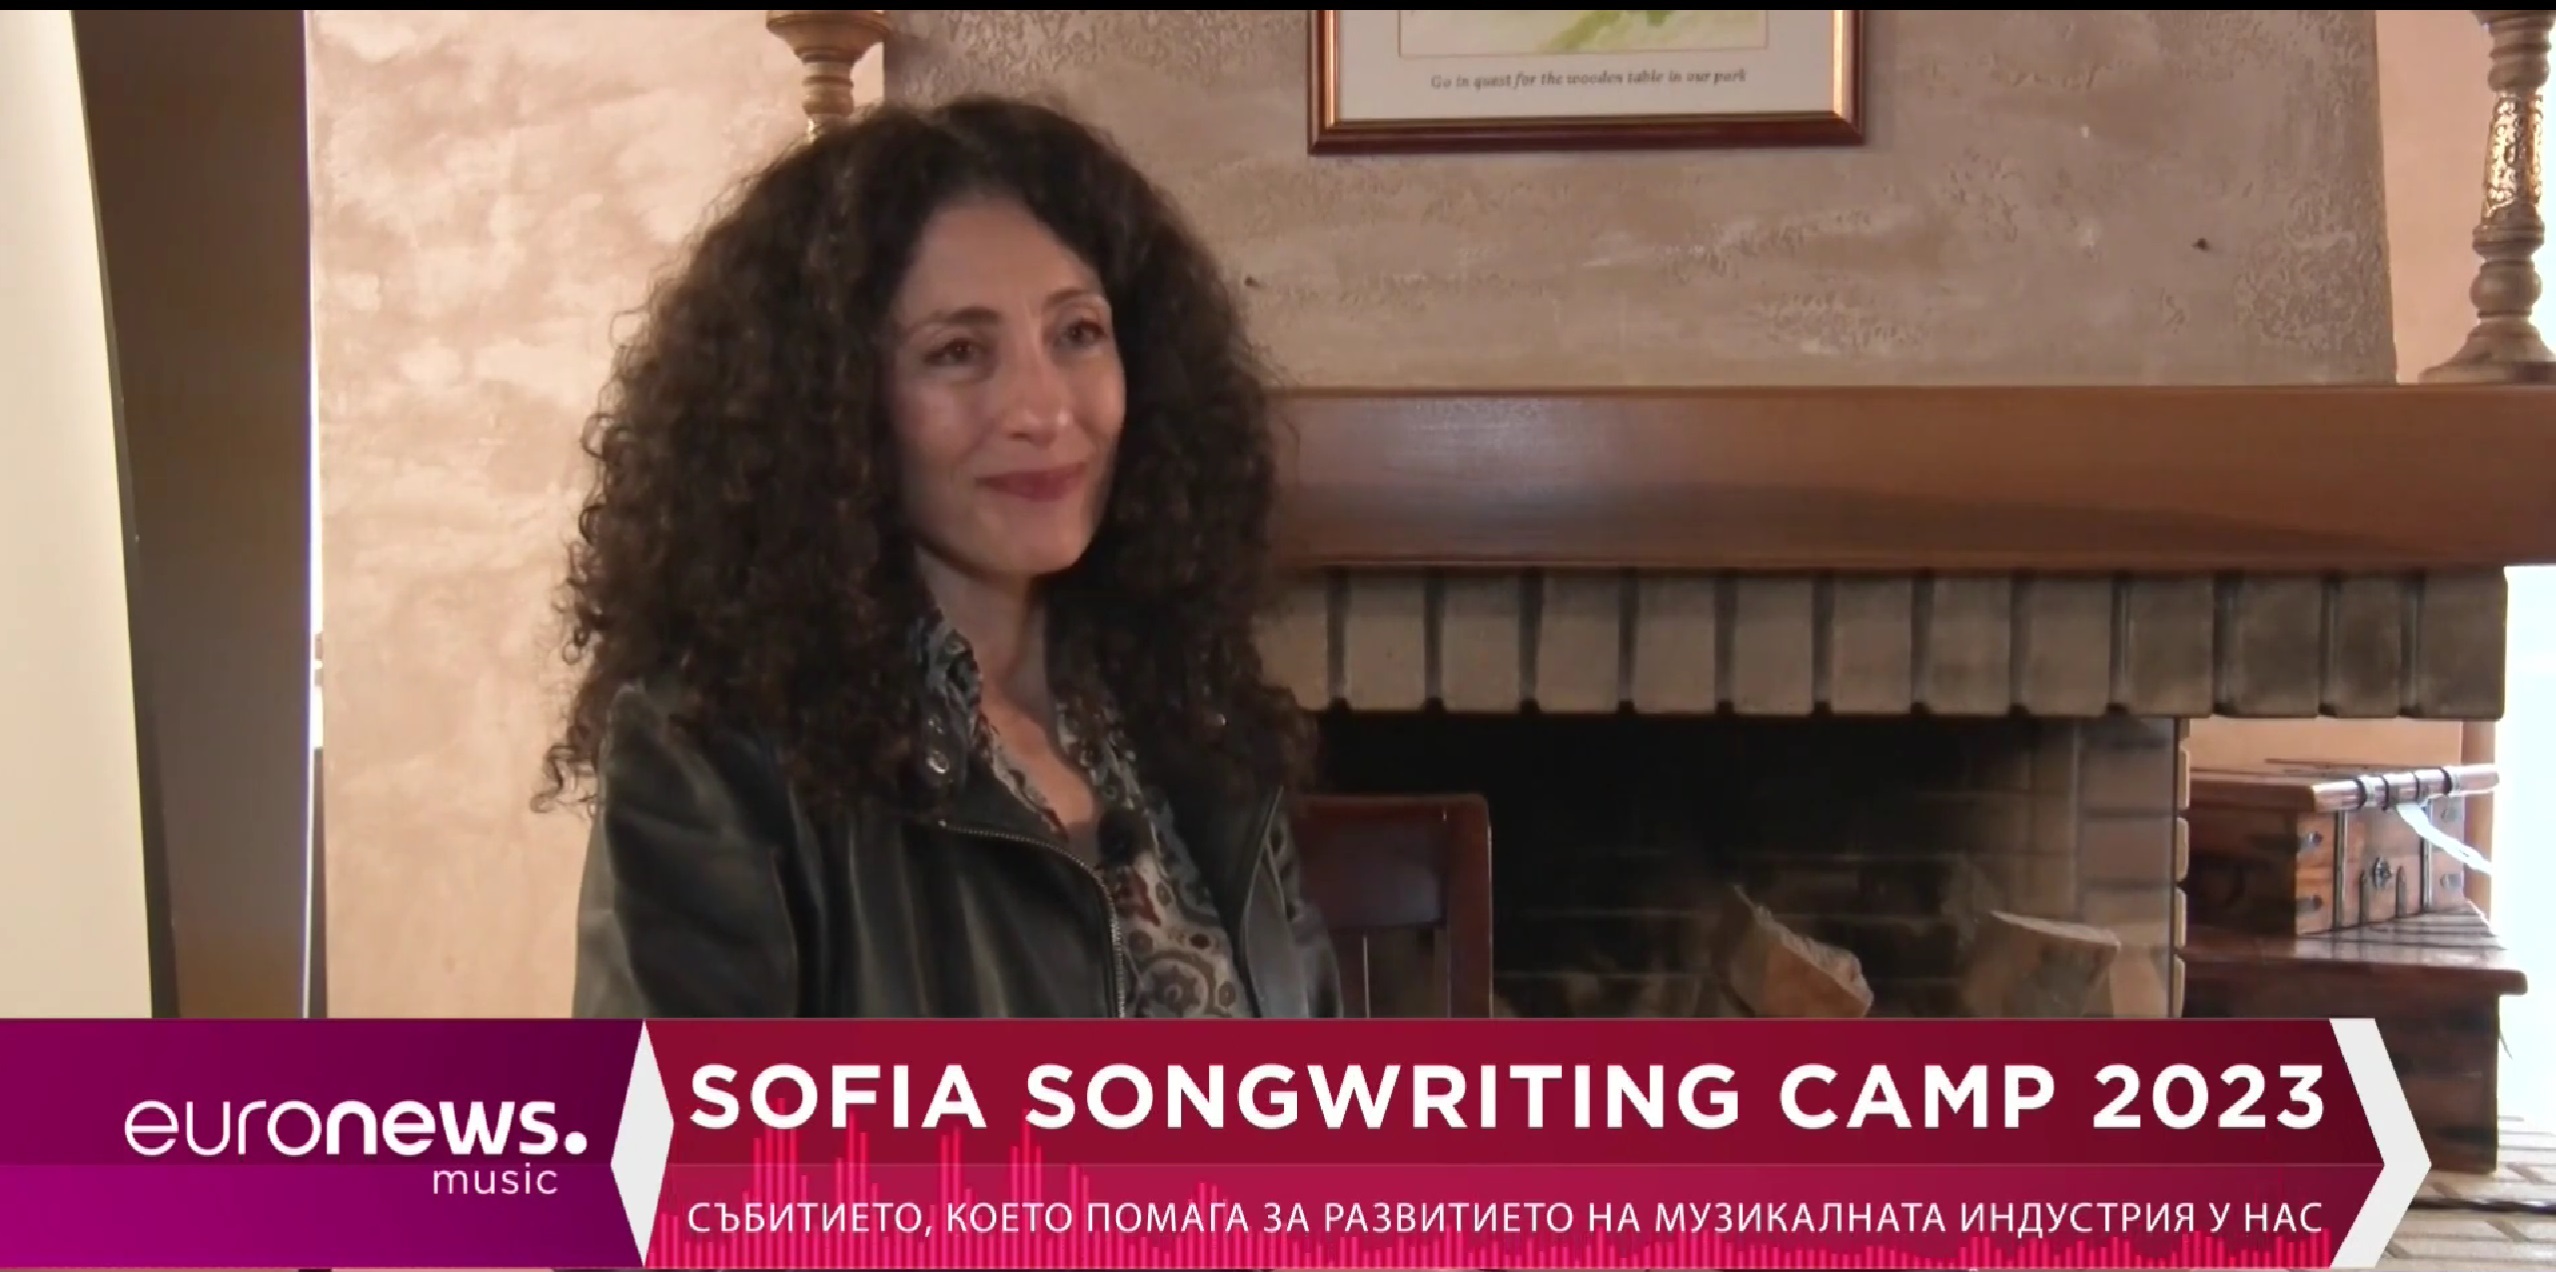 Веселин Вълчев: Как започна идеята за създаването на Sofia Songwriting Camp?
Саня Армутлиева: Това е идея,